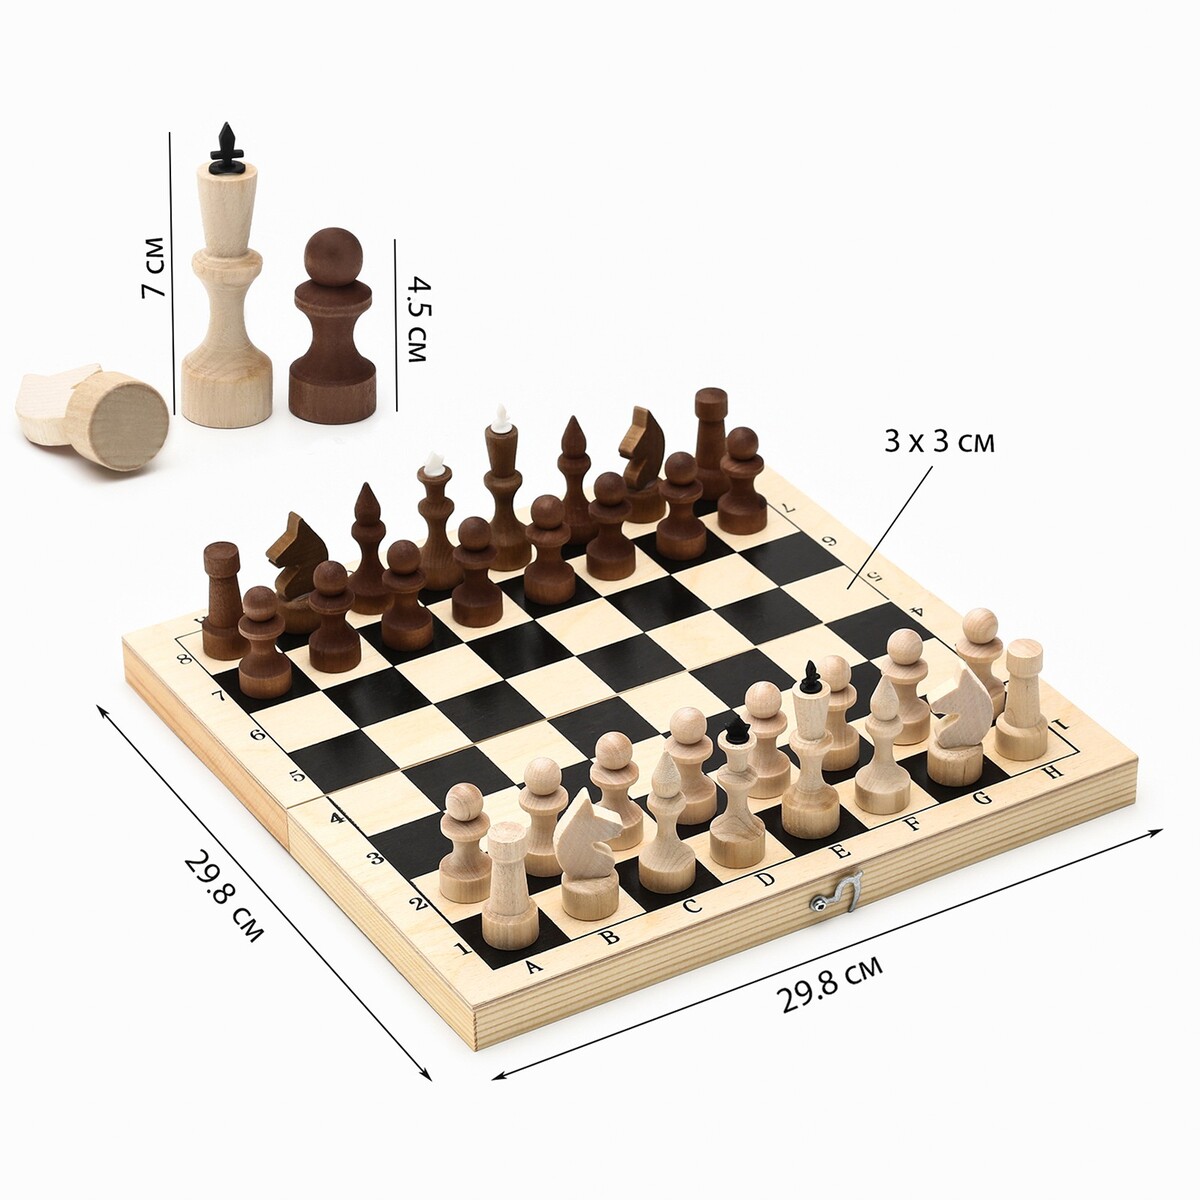 фото Шахматы деревянные обиходные 29.8 х 29.8 см, король h-7.2 см, пешка h-4.5 см no brand